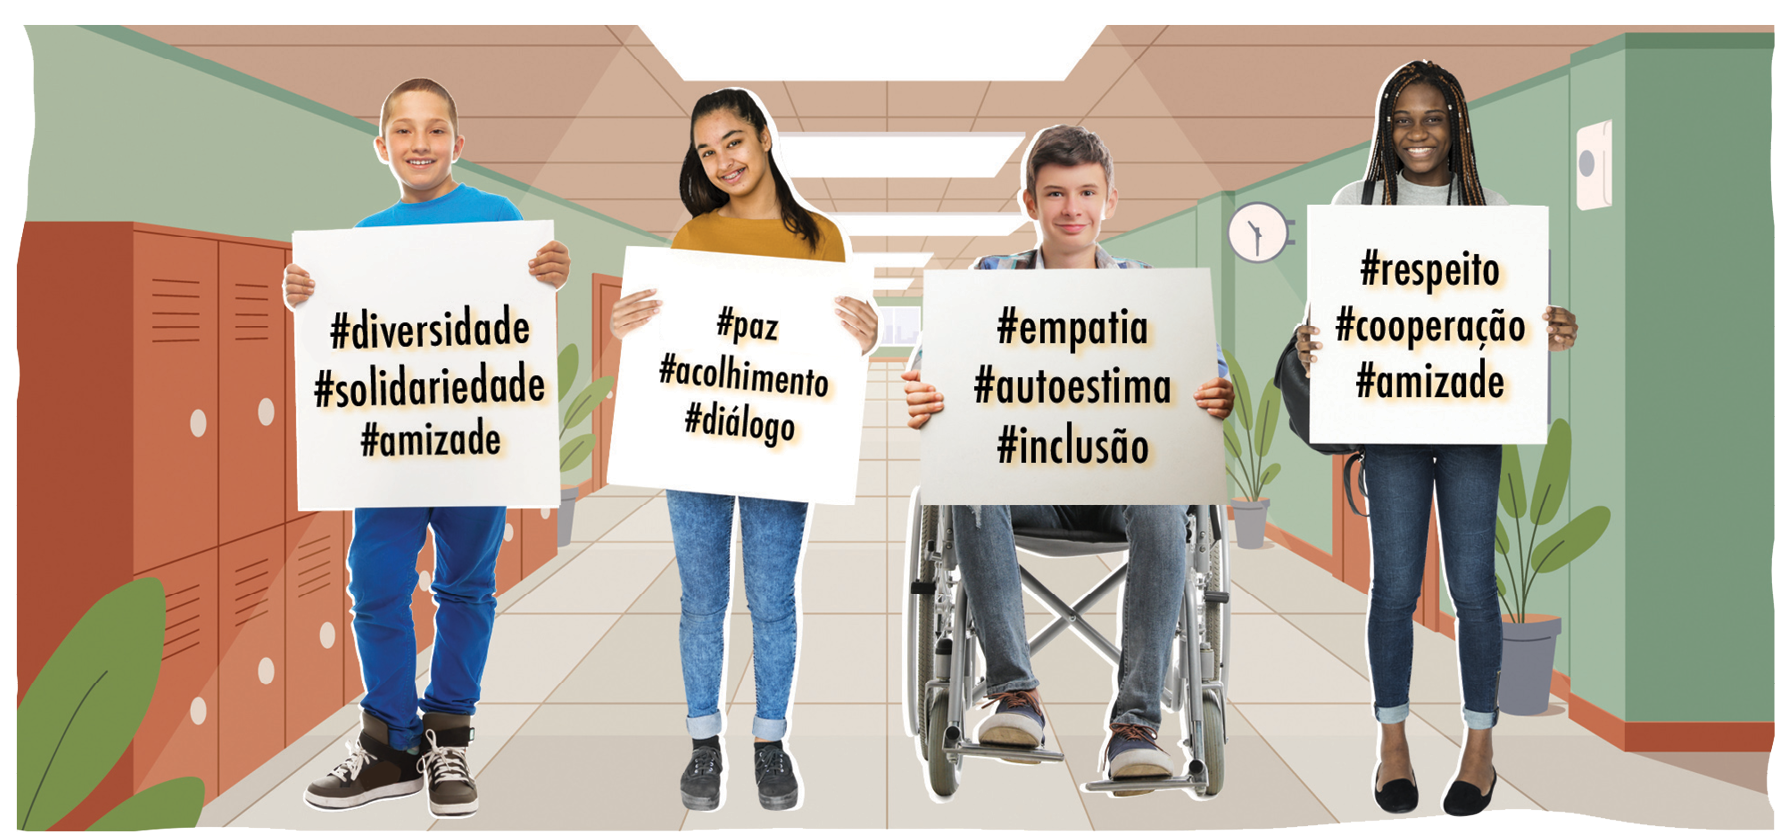 Ilustração. Quatro adolescentes segurando cartazes com hashtags. Ao fundo, ilustração do corredor de uma escola, com armários e plantas. O menino à esquerda segura um cartaz com as palavras: #diversidade #solidariedade #amizade. Ao lado dele, uma menina carrega outro cartaz com as palavras: #paz, #acolhimento, #diálogo. No centro, um menino cadeirante tem o cartaz com as palavras: #empataia, #autoestima, #inclusão. Por fim, à direita, uma menina carrega um cartaz com as palavras: #respeito, #cooperação, #amizade.